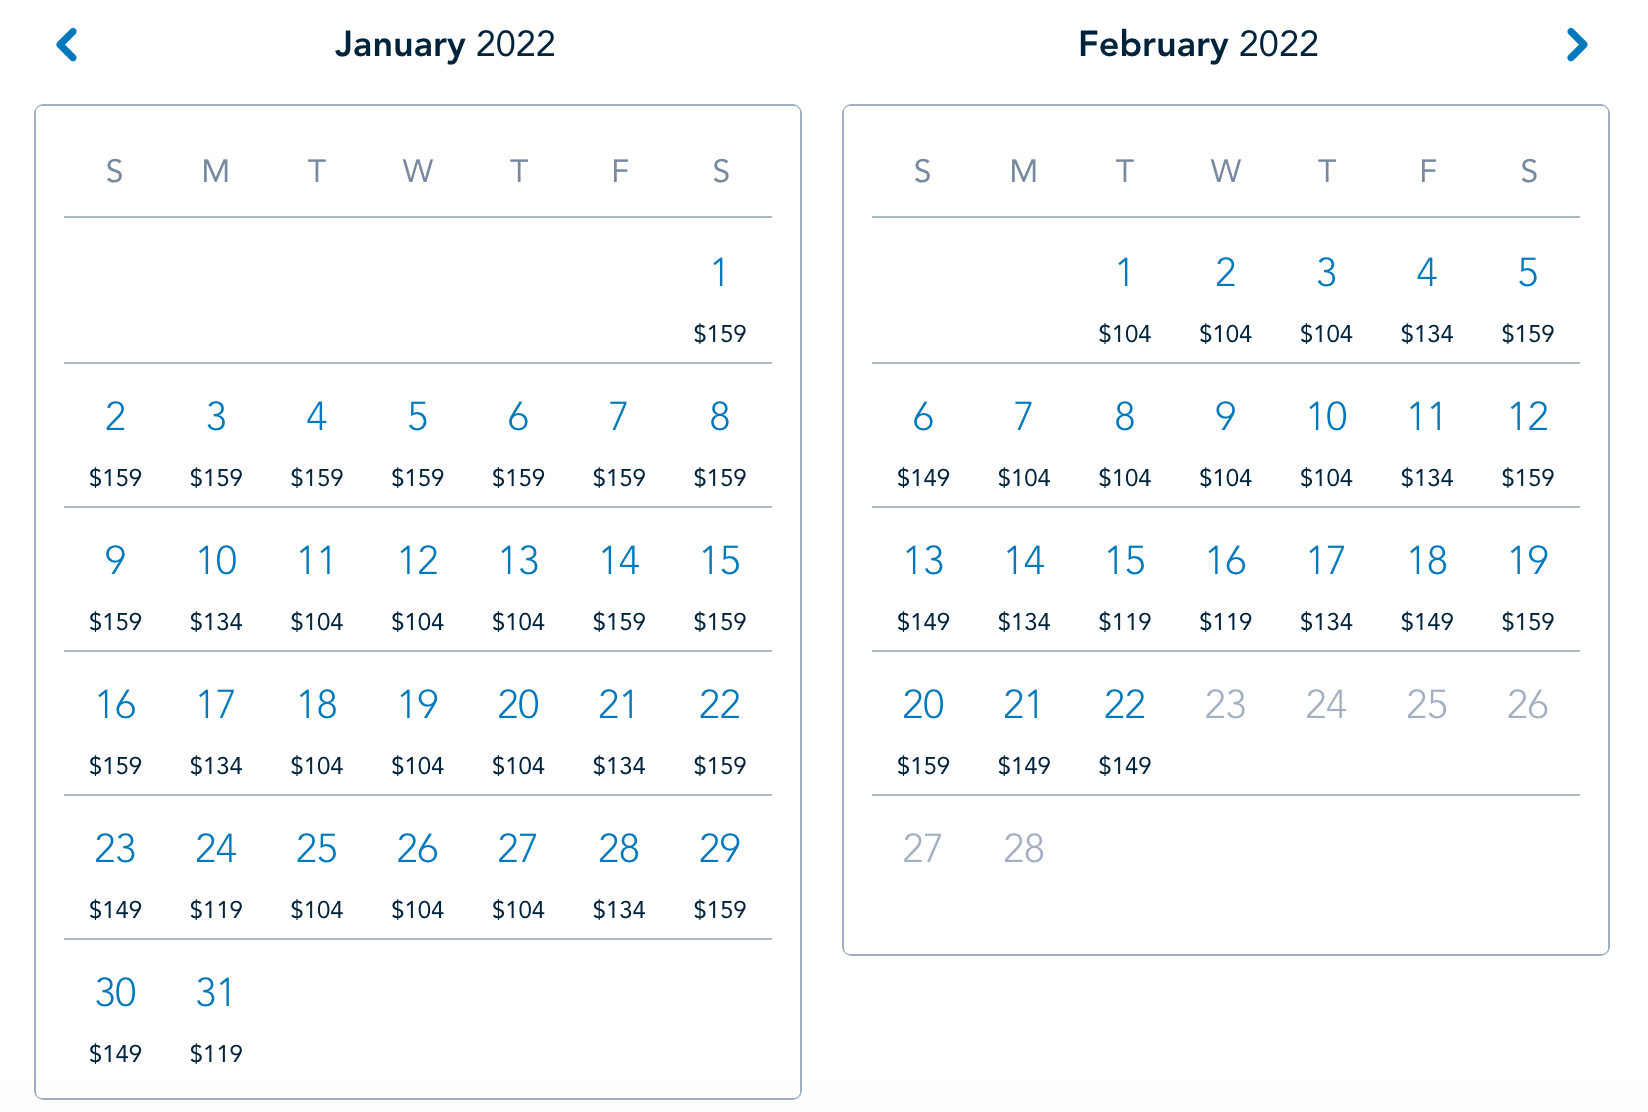  Disneyland 1 day ticket prices calendar Jan Feb 2022 